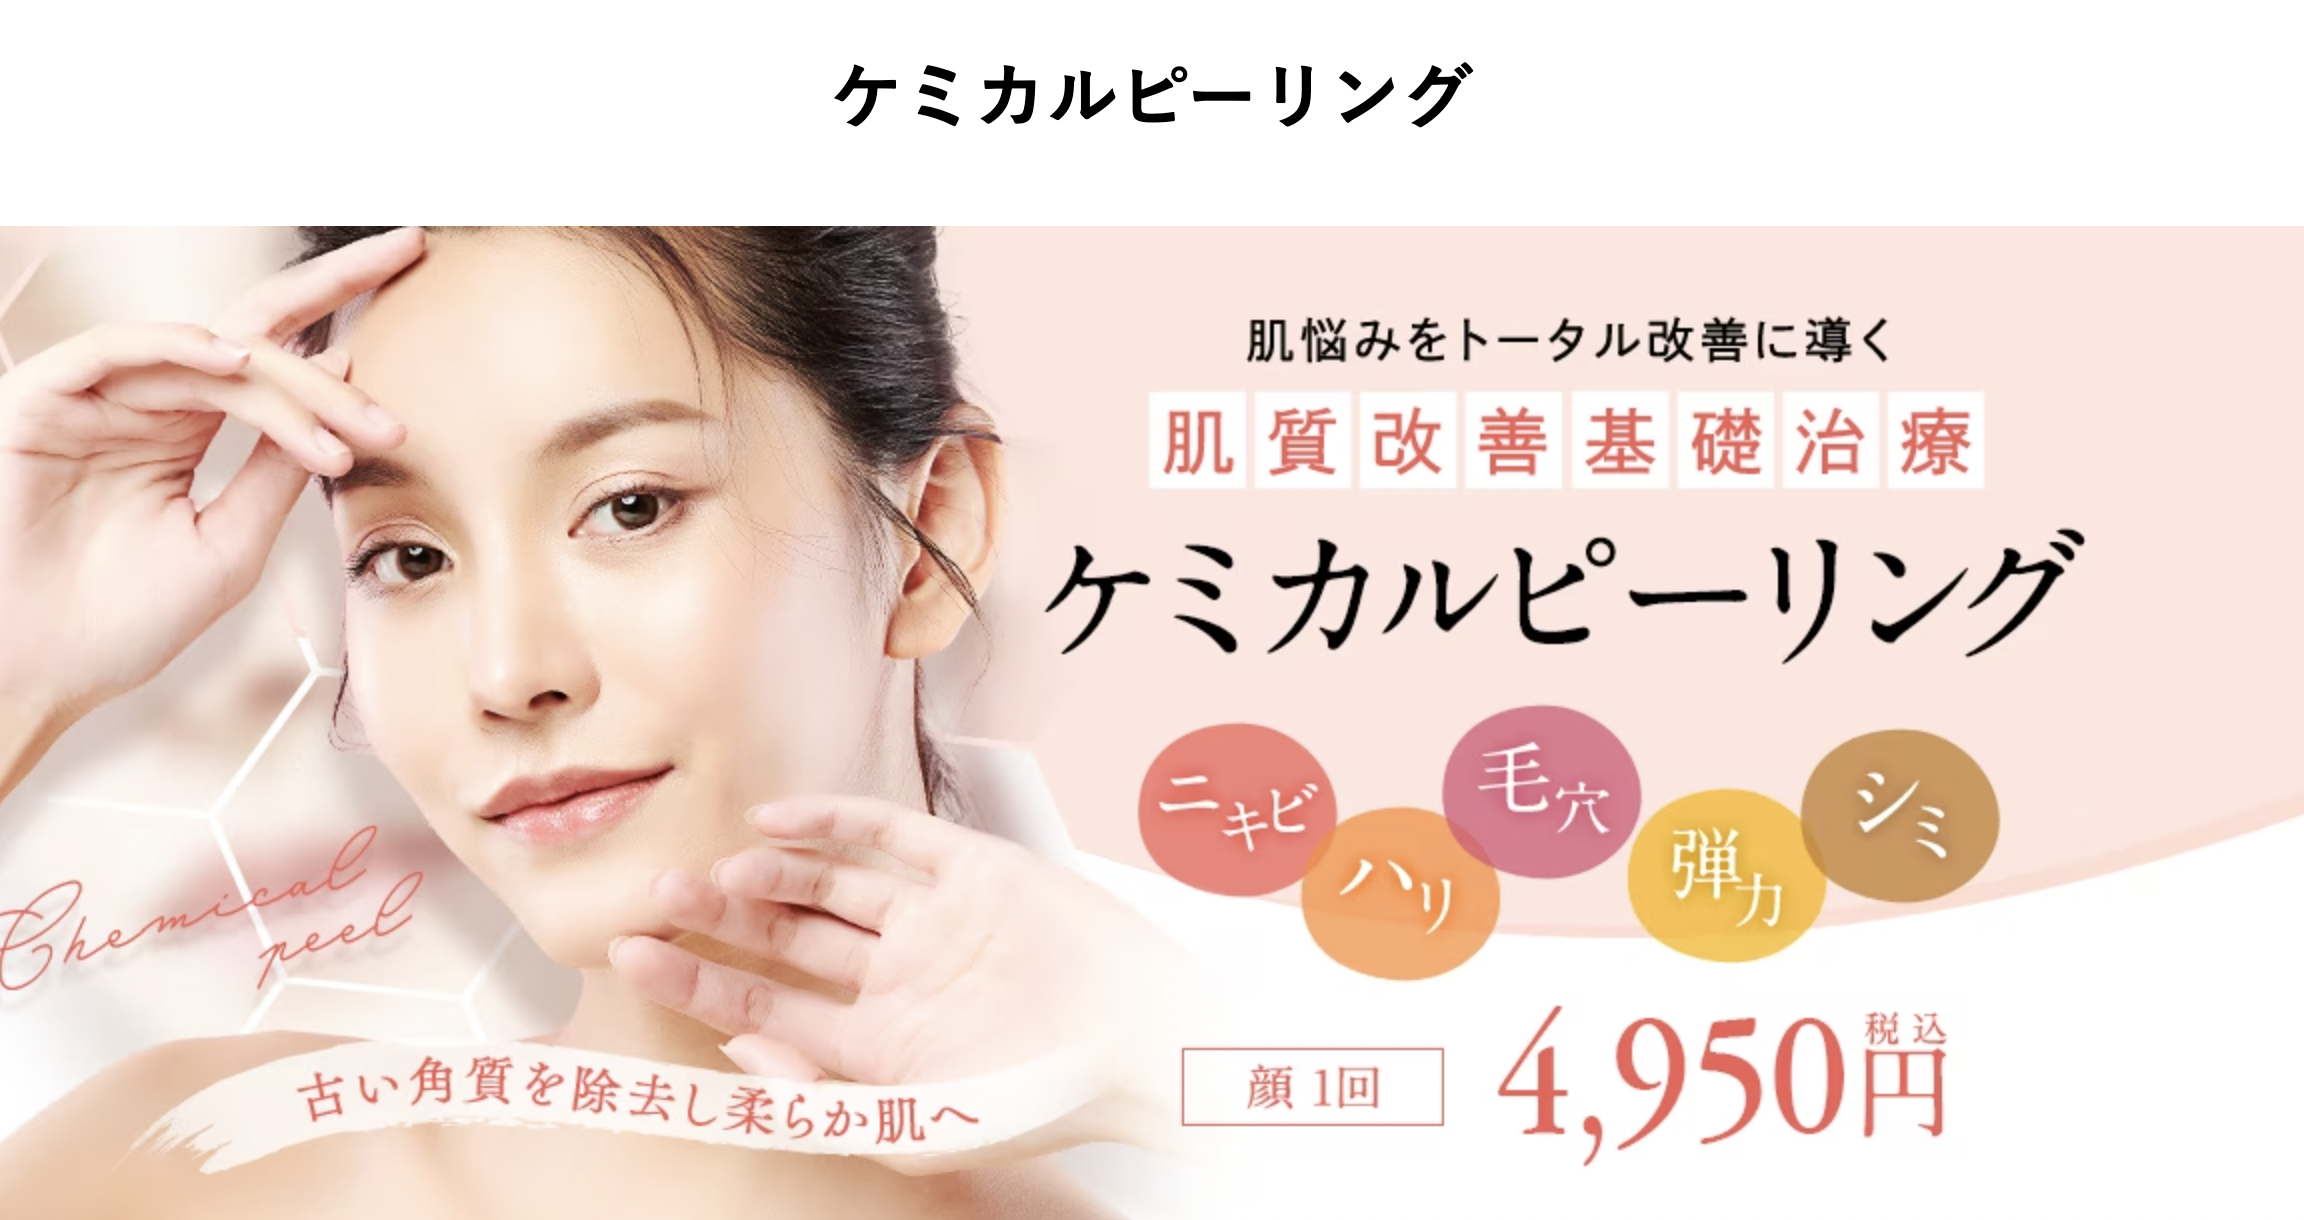 福岡でケミカルピーリングが安いおすすめの湘南美容クリニック